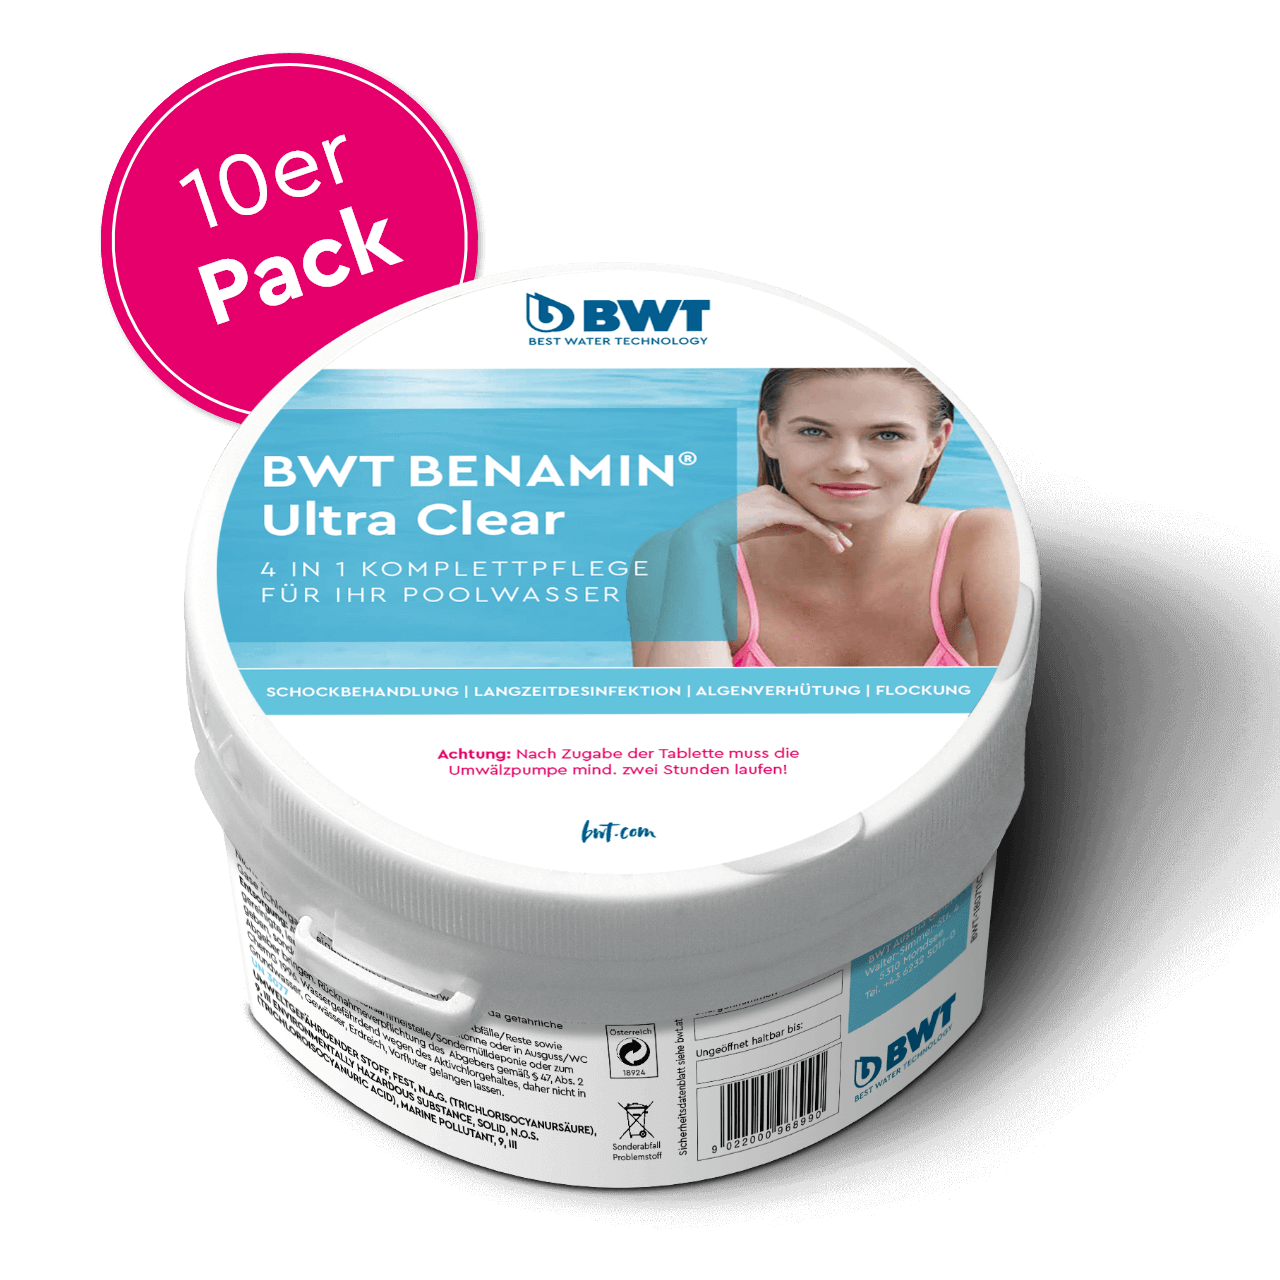 BWT Benamin Ultra Clear paquet de dix